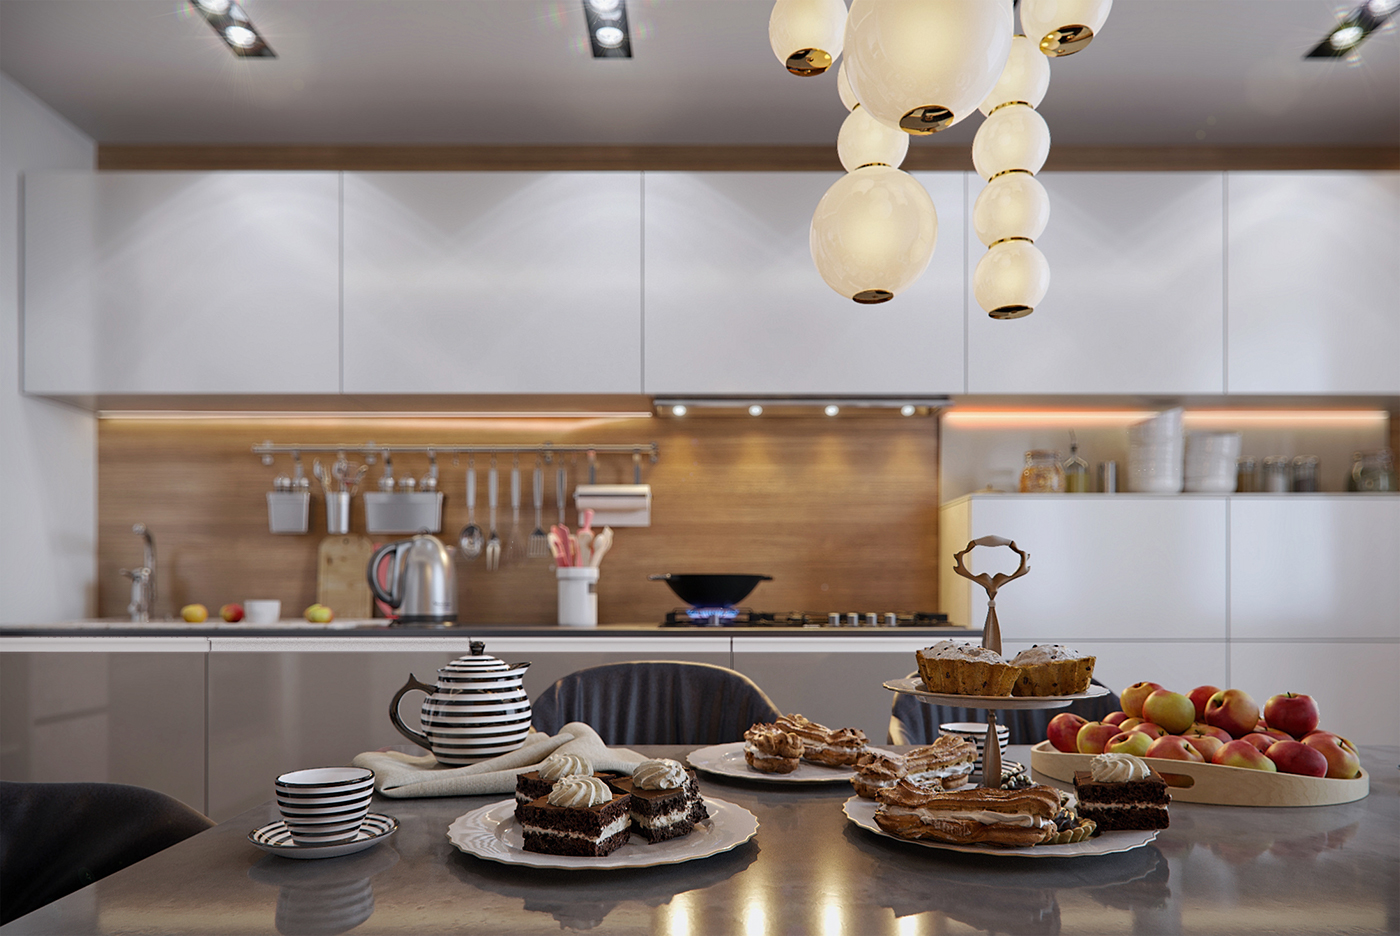 kitchen visualization кухня визуализация интерьер дизайн Interior design rendering interiors